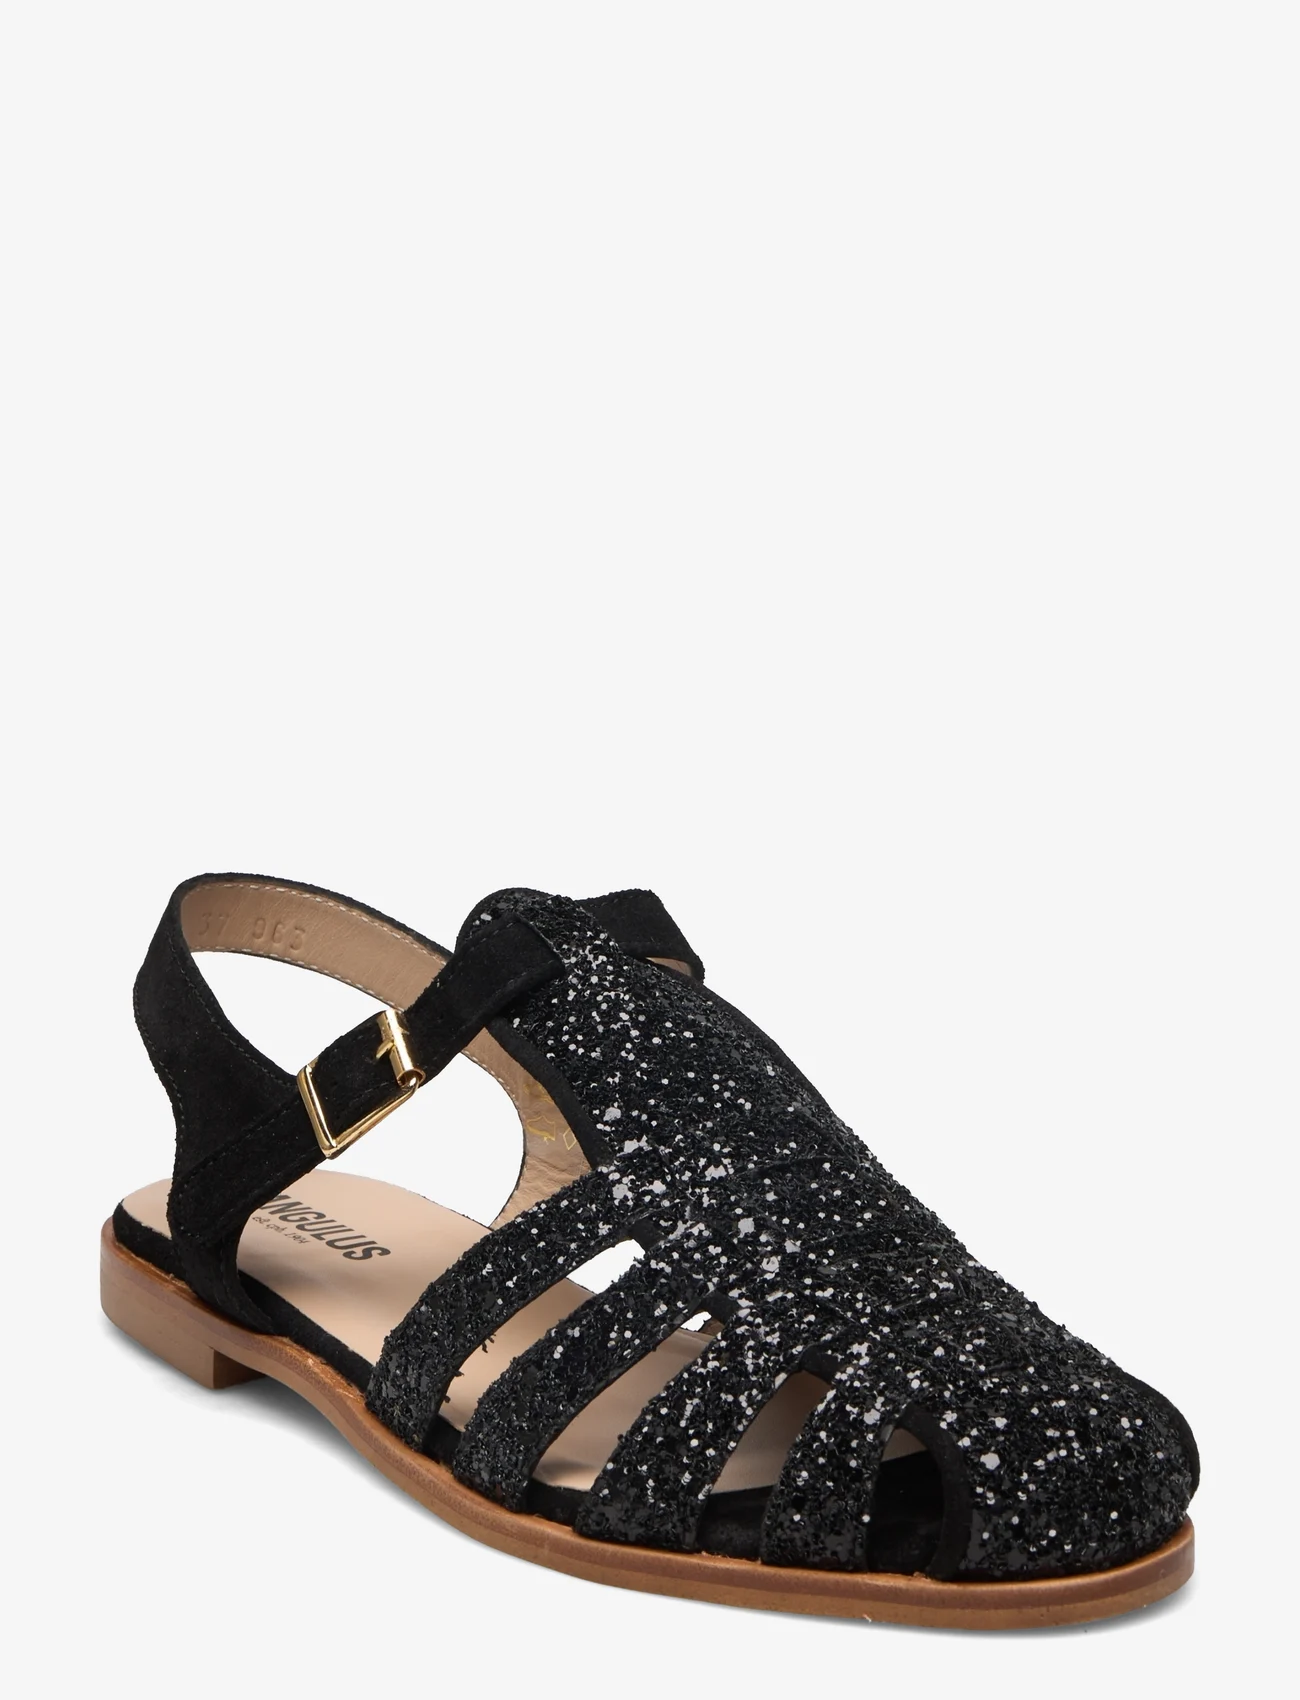 ANGULUS - Sandals - flat - closed toe - op - festklær til outlet-priser - 2486/1163 black glit/black - 0